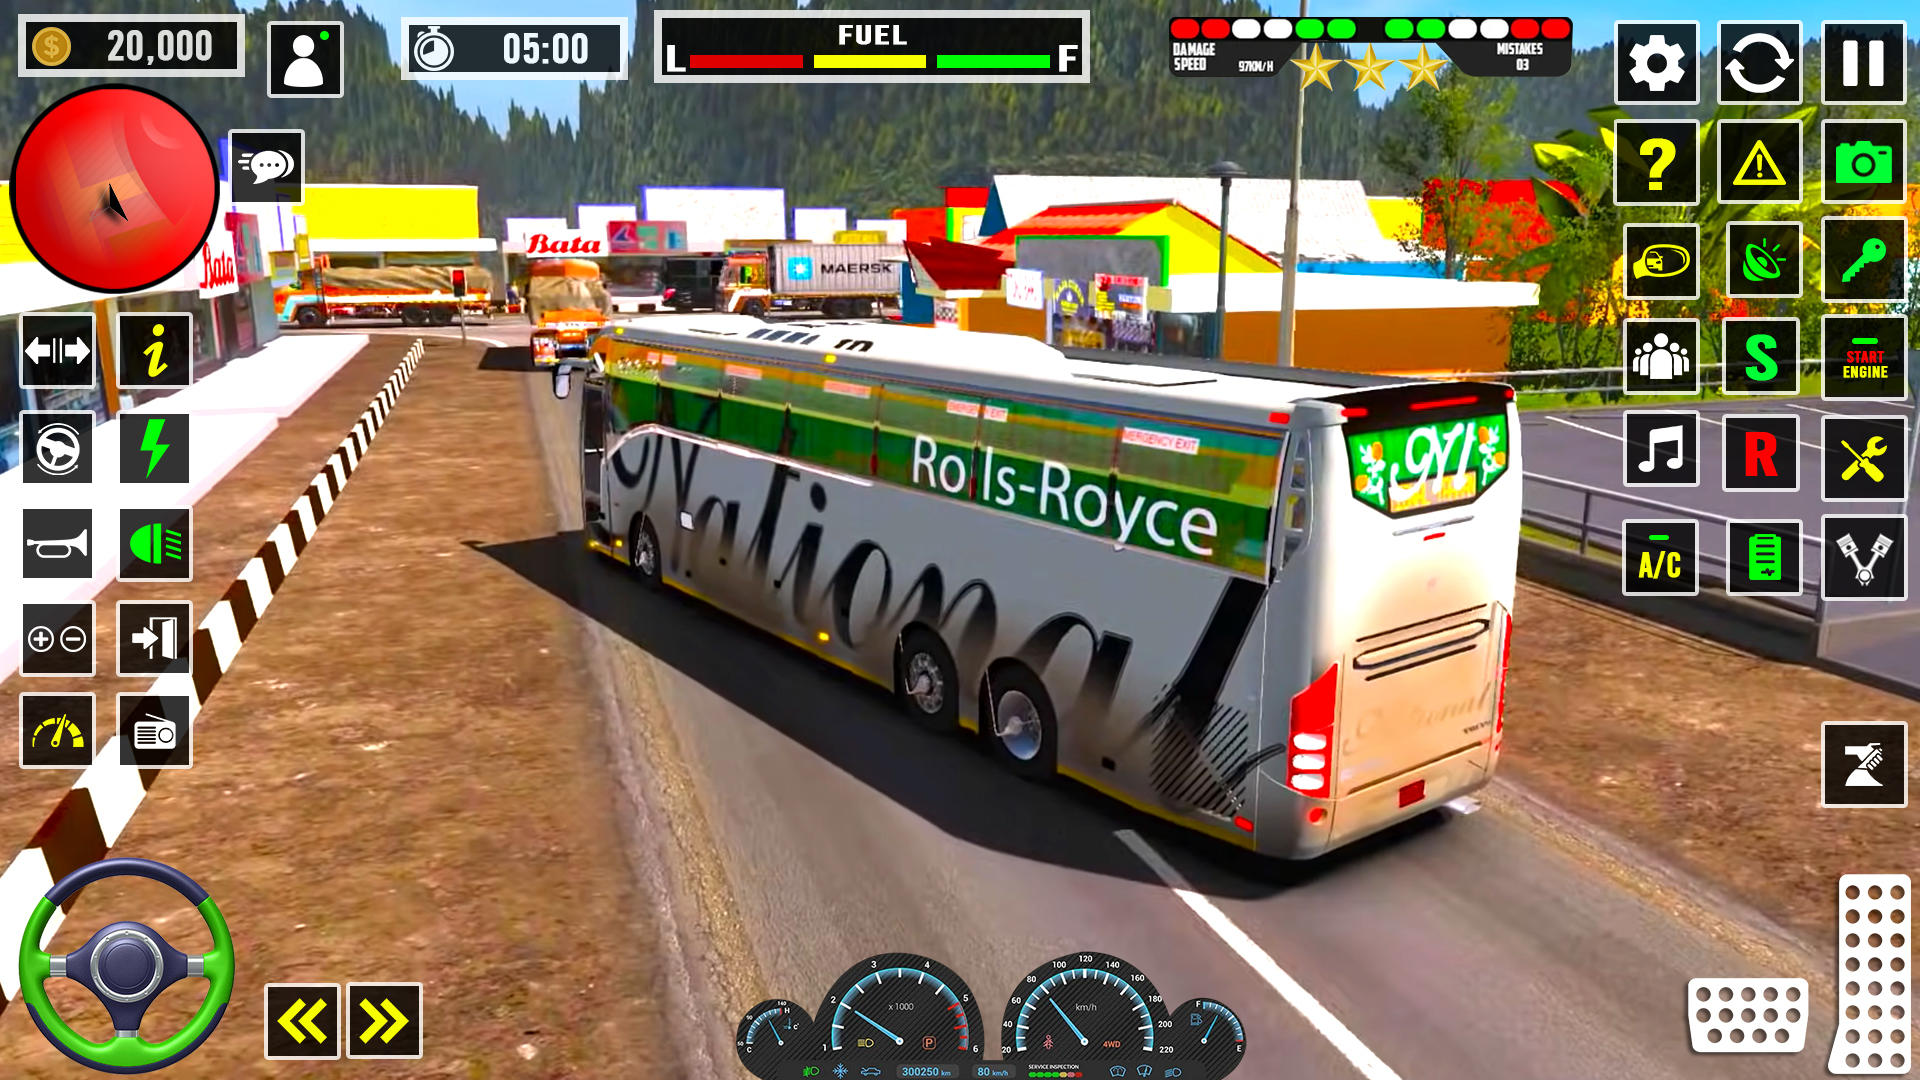 Screenshot 1 of Trò chơi lái xe buýt huấn luyện viên Hoa Kỳ 0.1